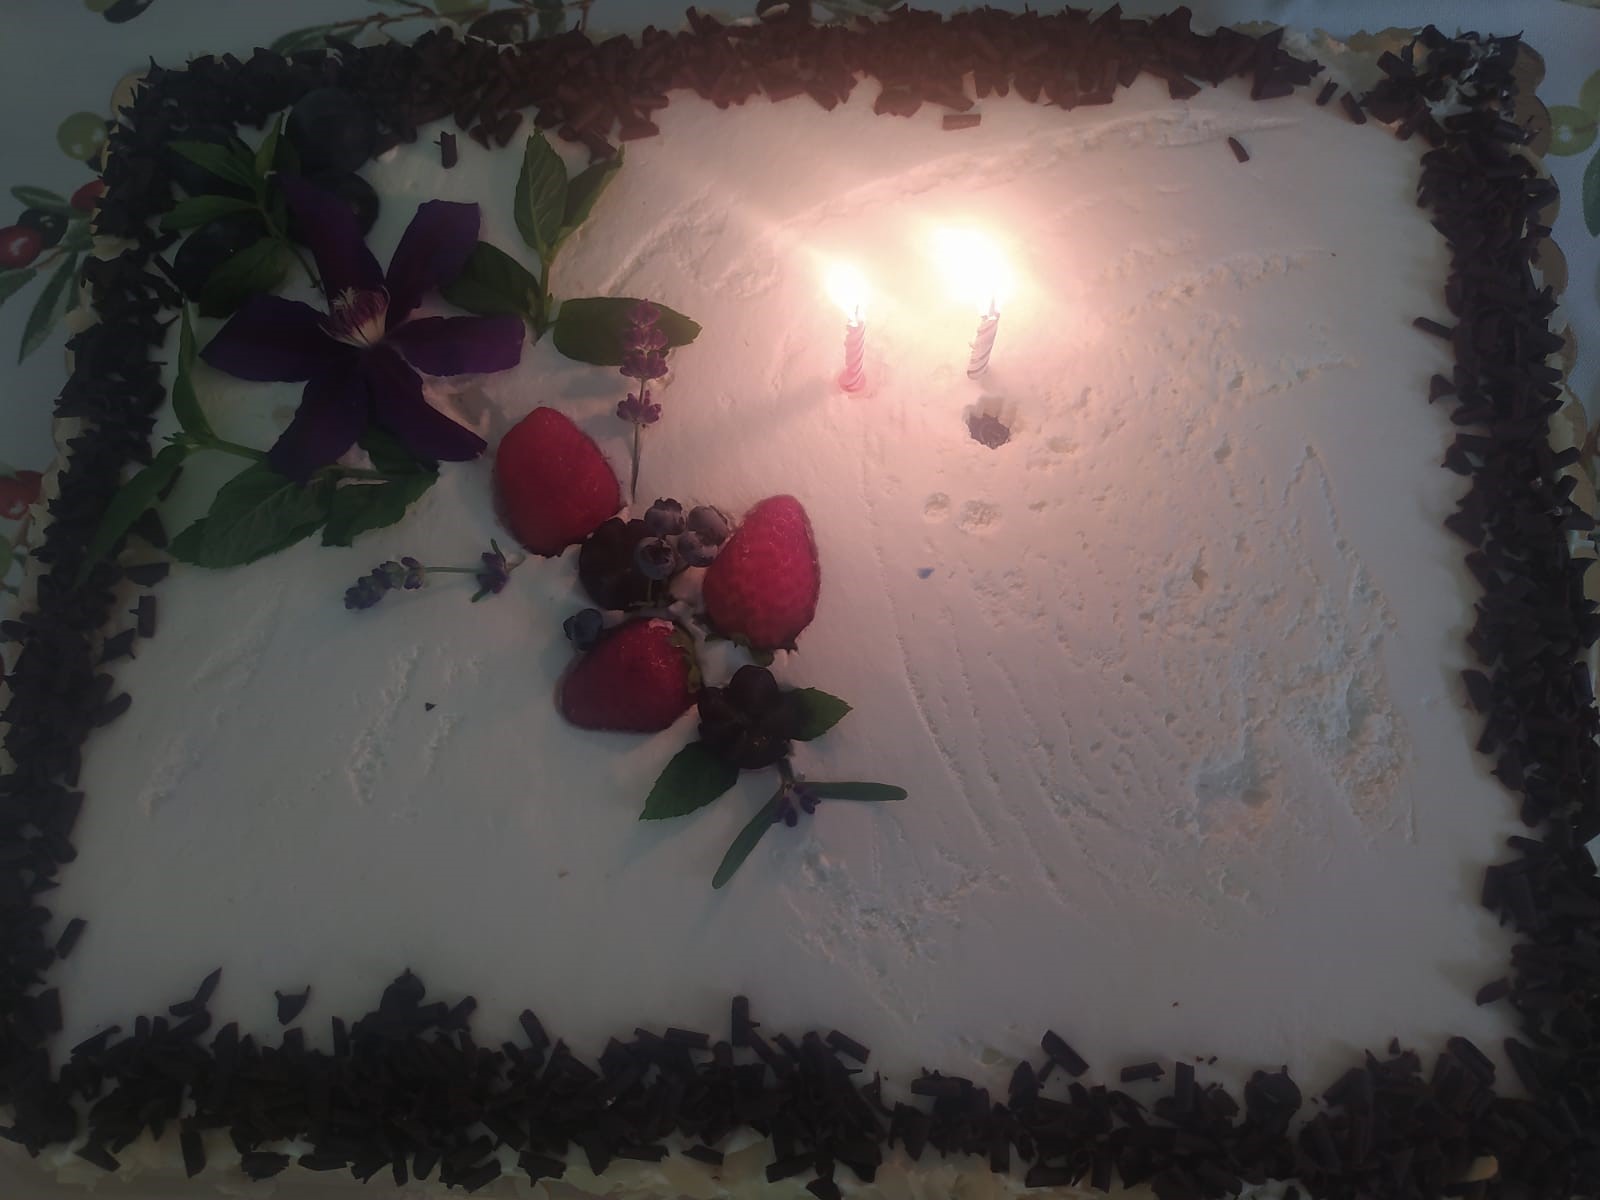 śmietankowy tort urodzinowy udekorowany czerwonymi malinami i wiórkami czekolady. Na torcie palą się 2 świeczki.